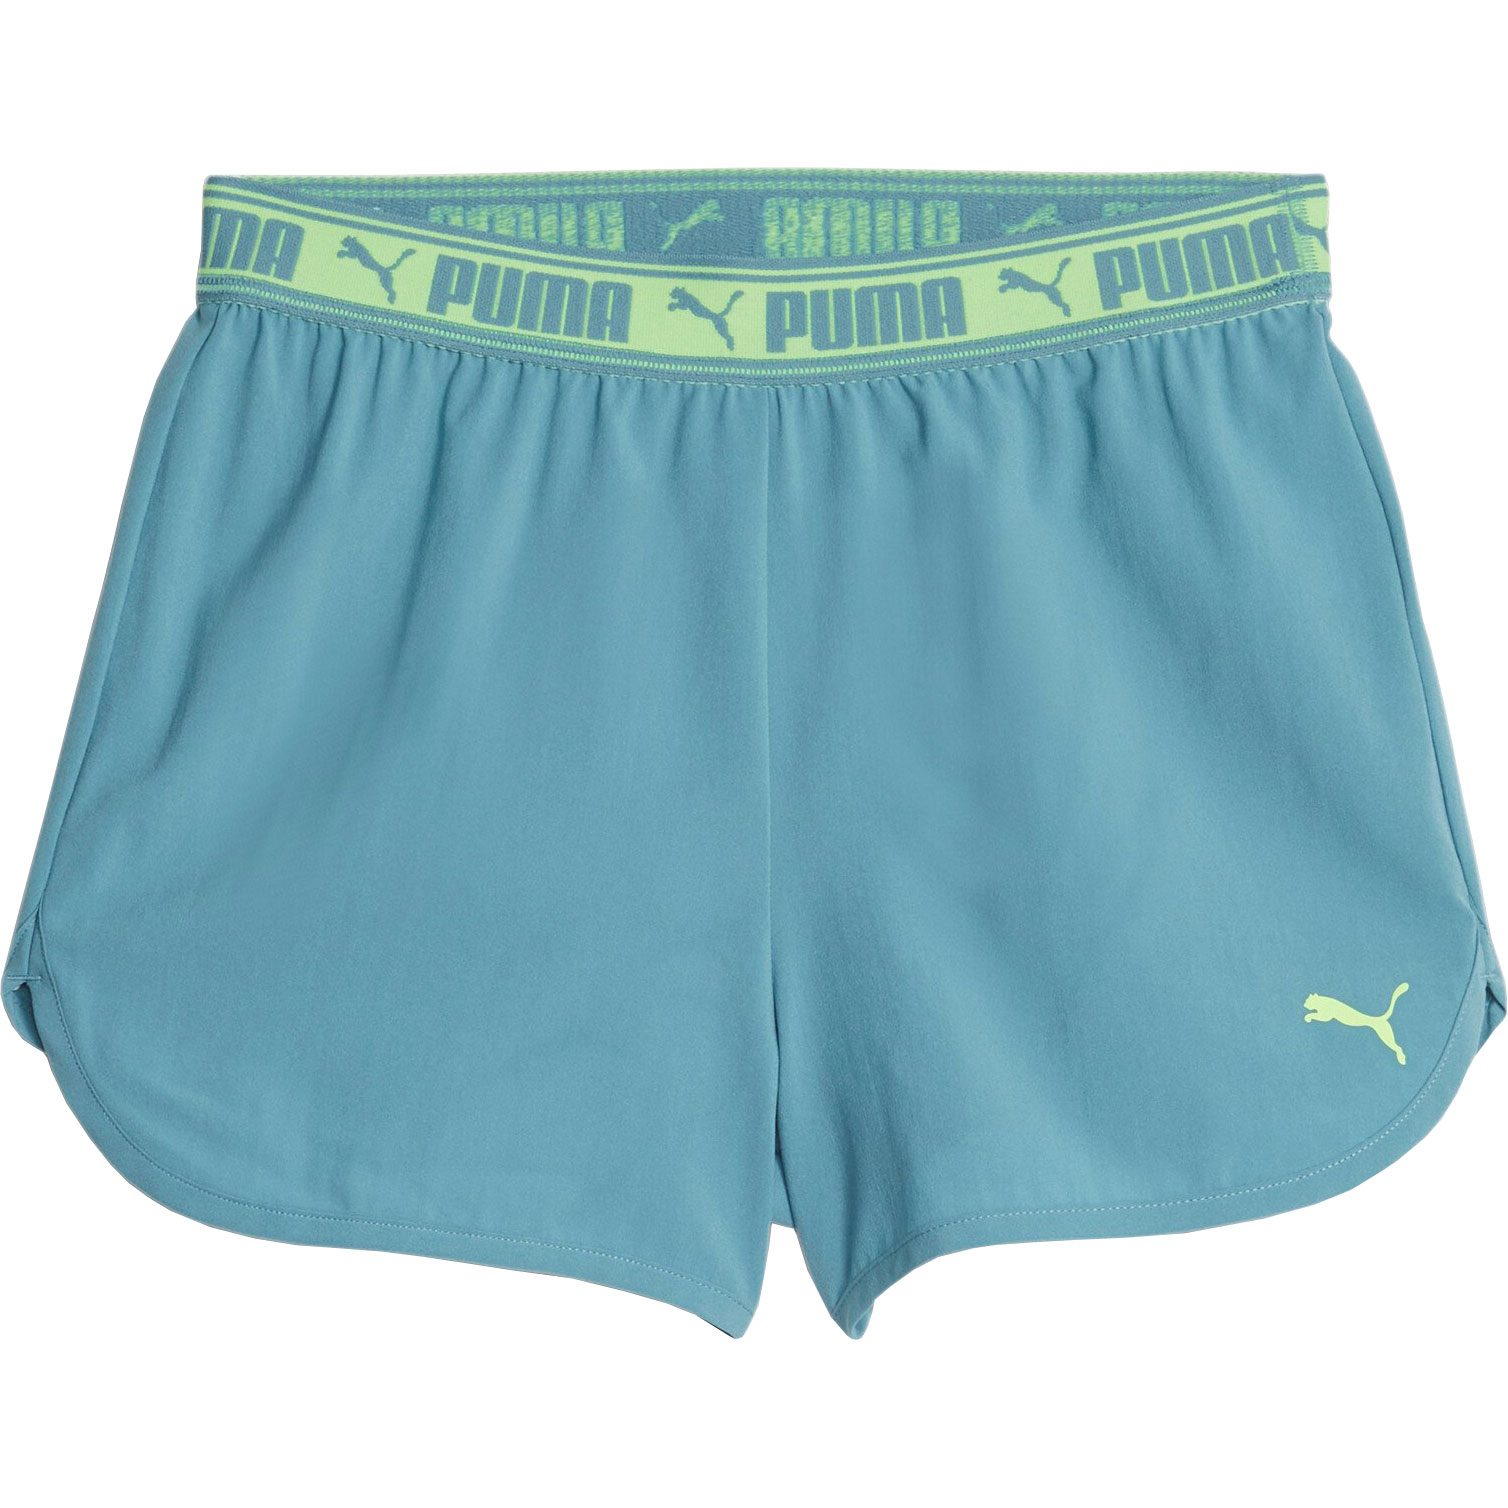 Puma - Strong Woven Shorts Girls bold blue at Sport Bittl Shop